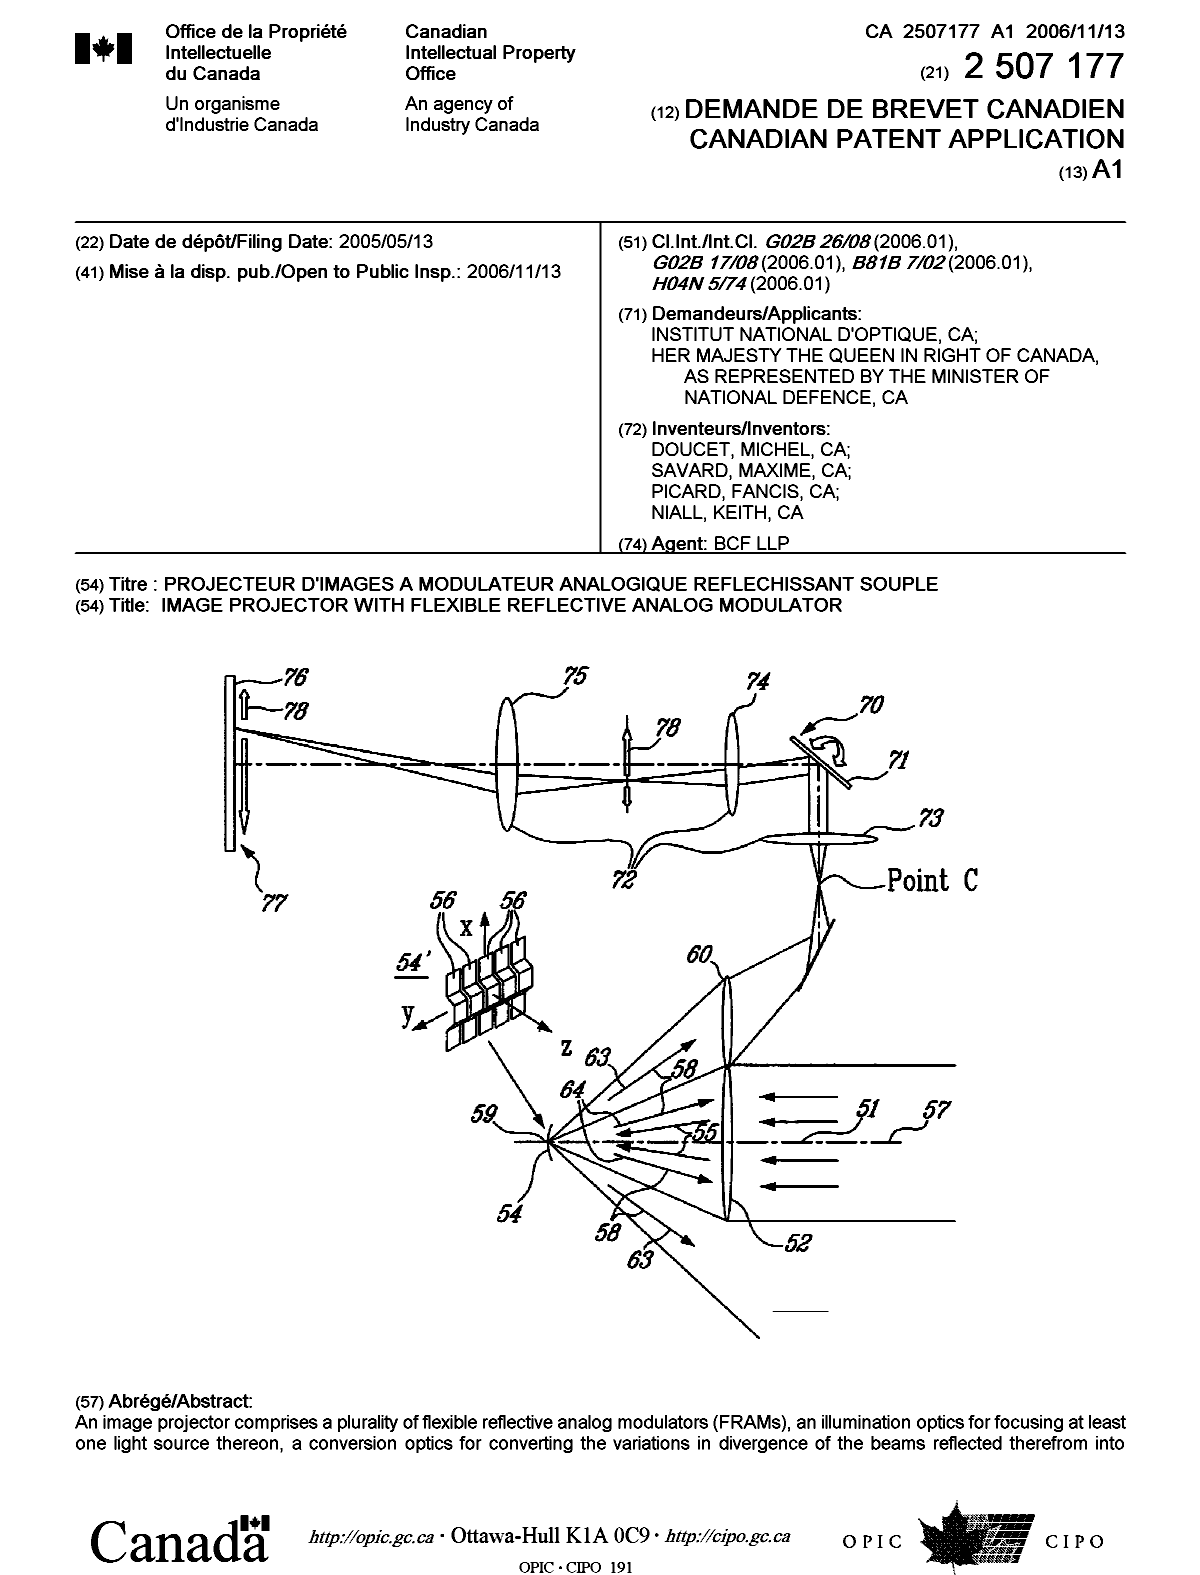 Document de brevet canadien 2507177. Page couverture 20061102. Image 1 de 2